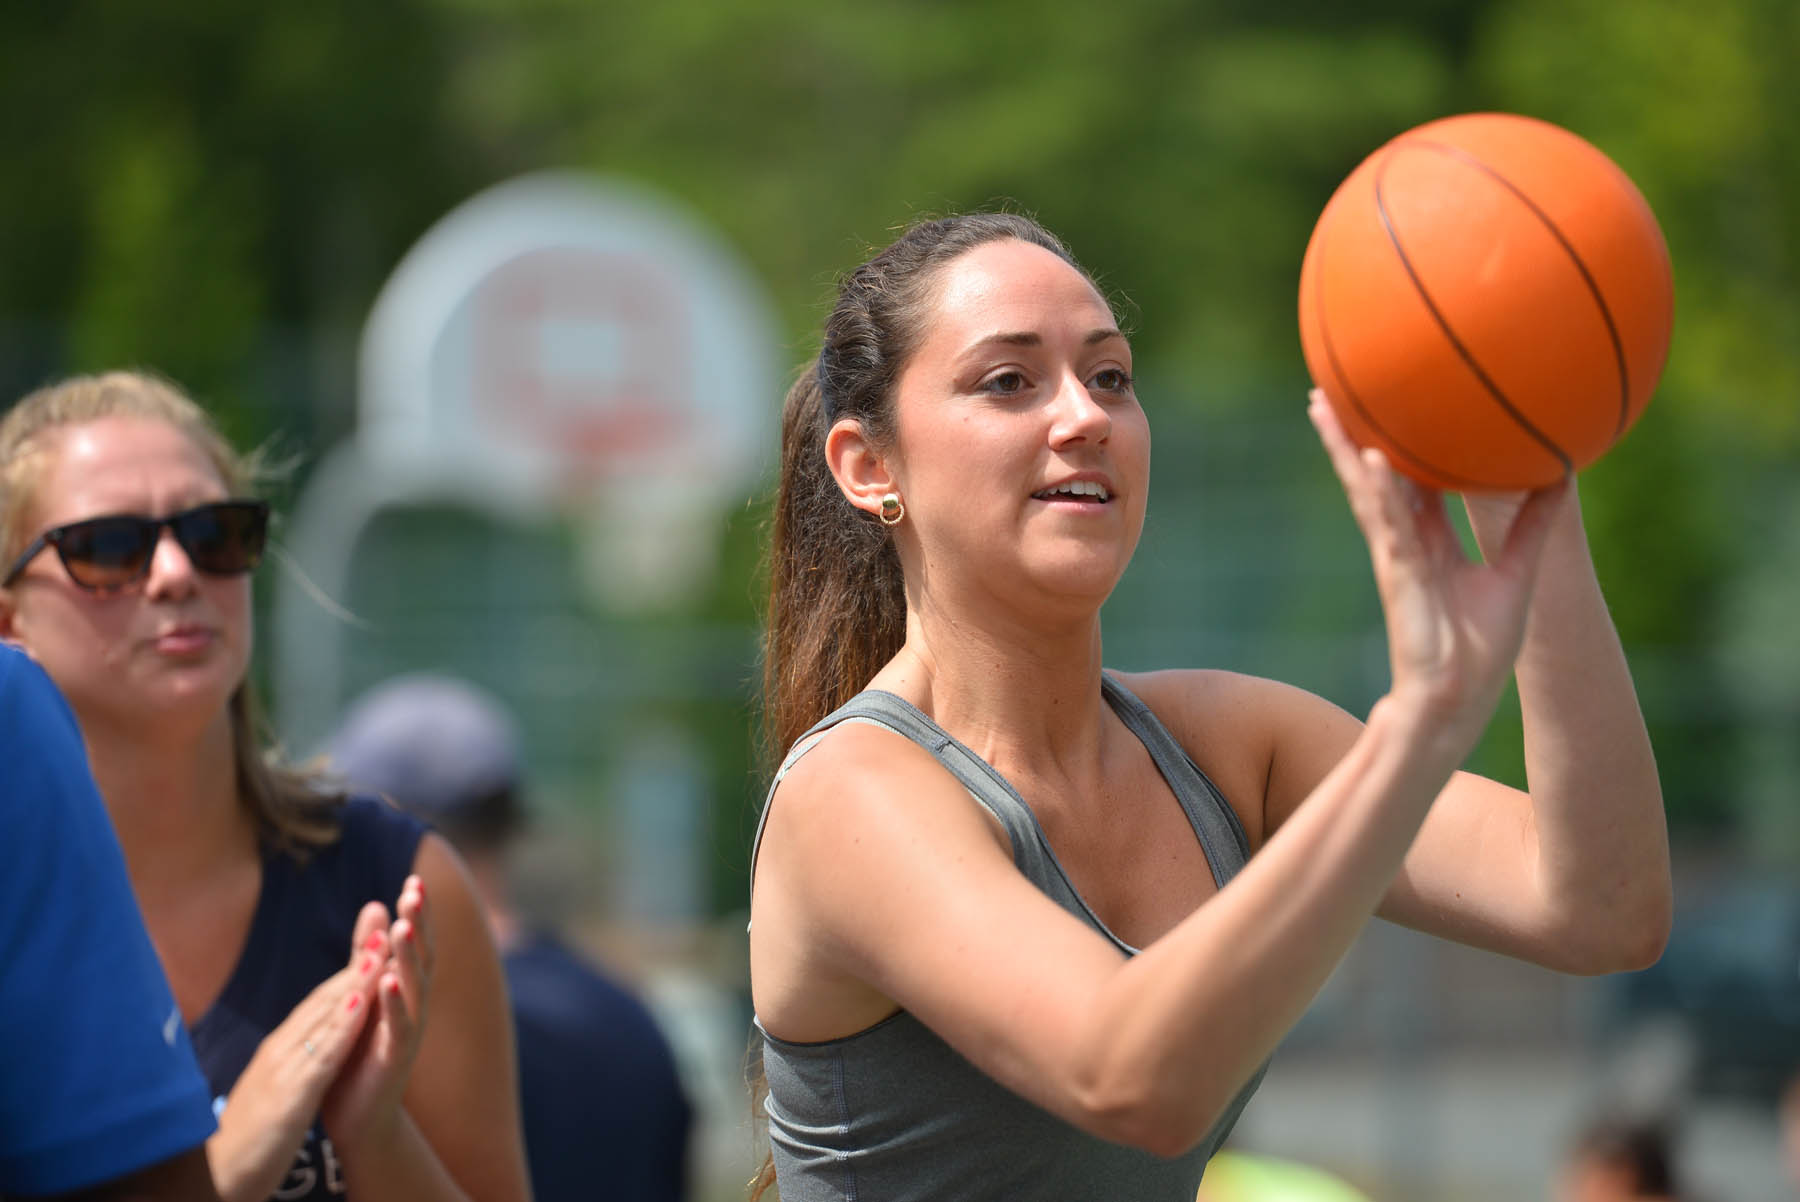 Woman shooting a basketball